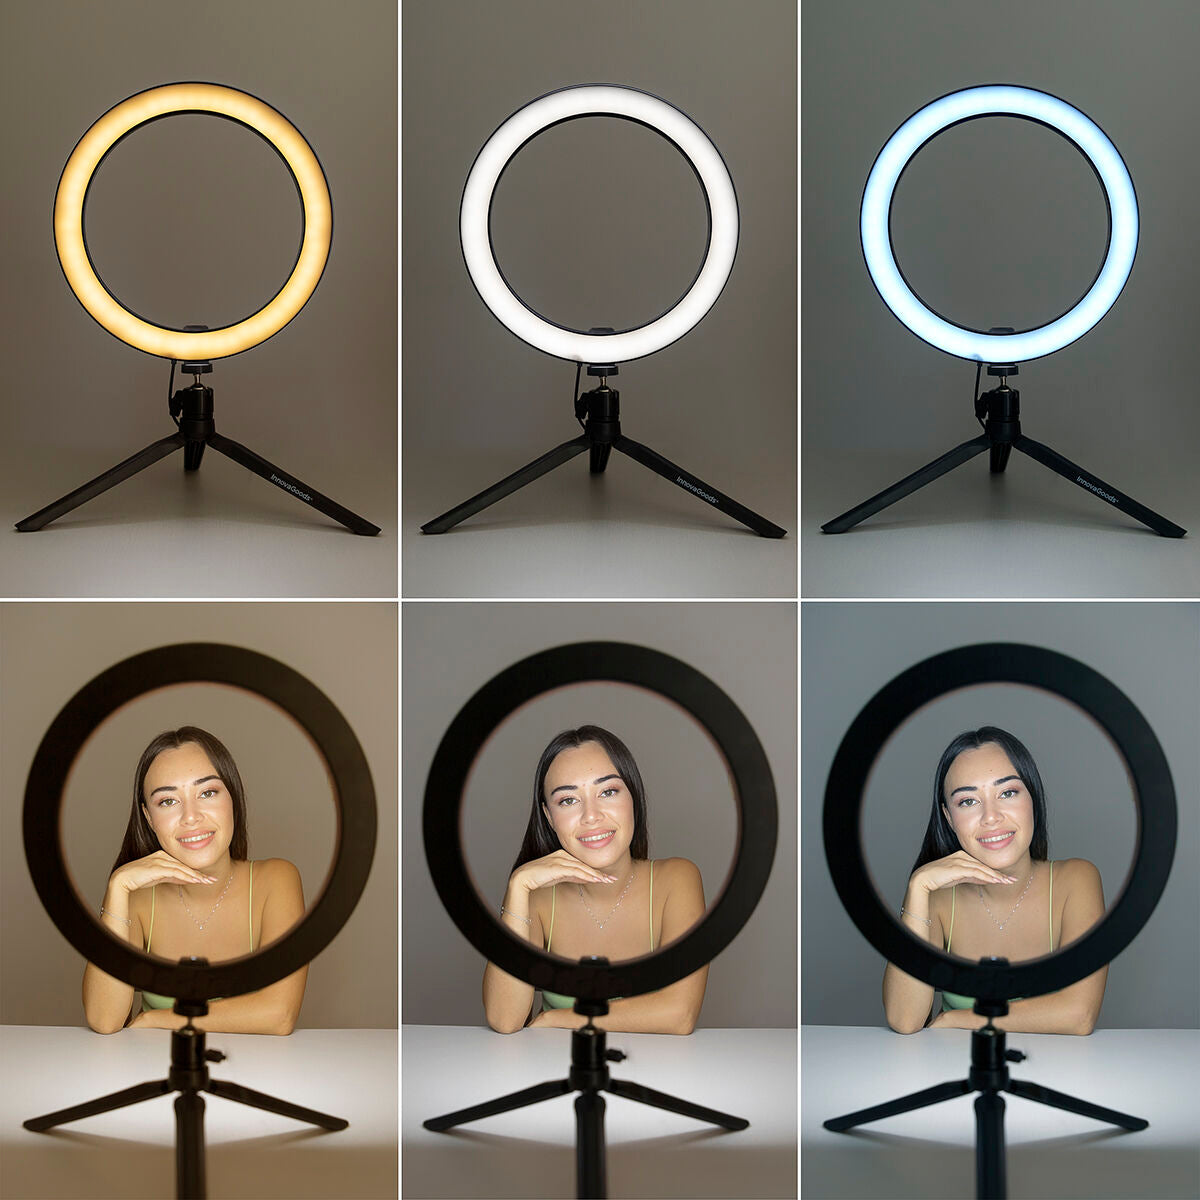 Selfie Ring Light Anneau de Lumière avec Triepied et Télécommande Youaro InnovaGoods